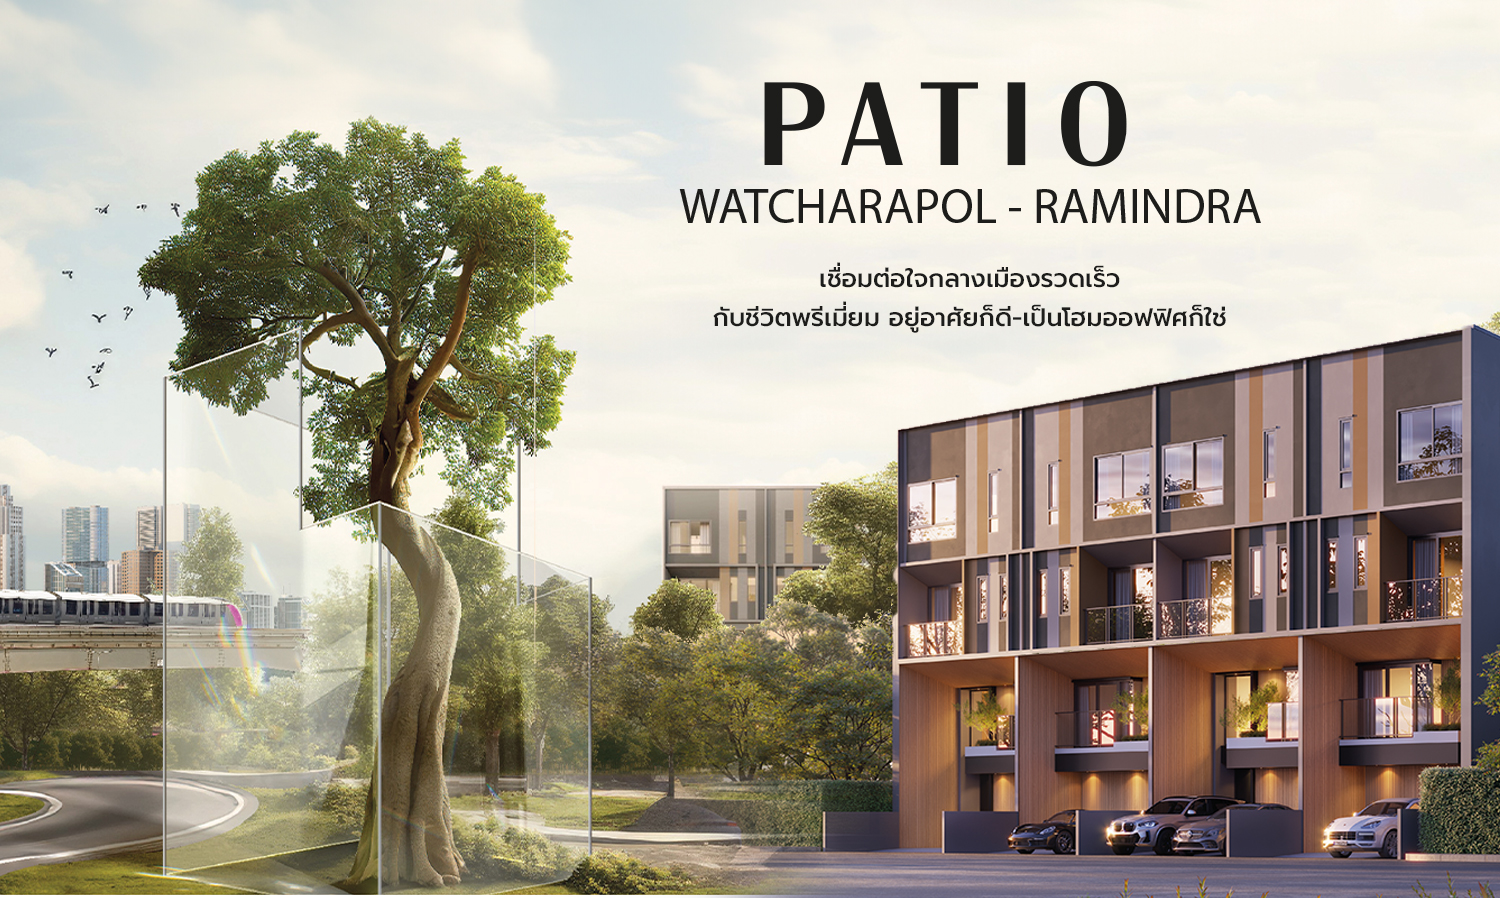 PATIO Watcharapol - Ramindra เชื่อมต่อใจกลางเมืองรวดเร็ว กับชีวิตพรีเมียม อยู่อาศัยก็ดี-เป็นโฮมออฟฟิศก็ใช่